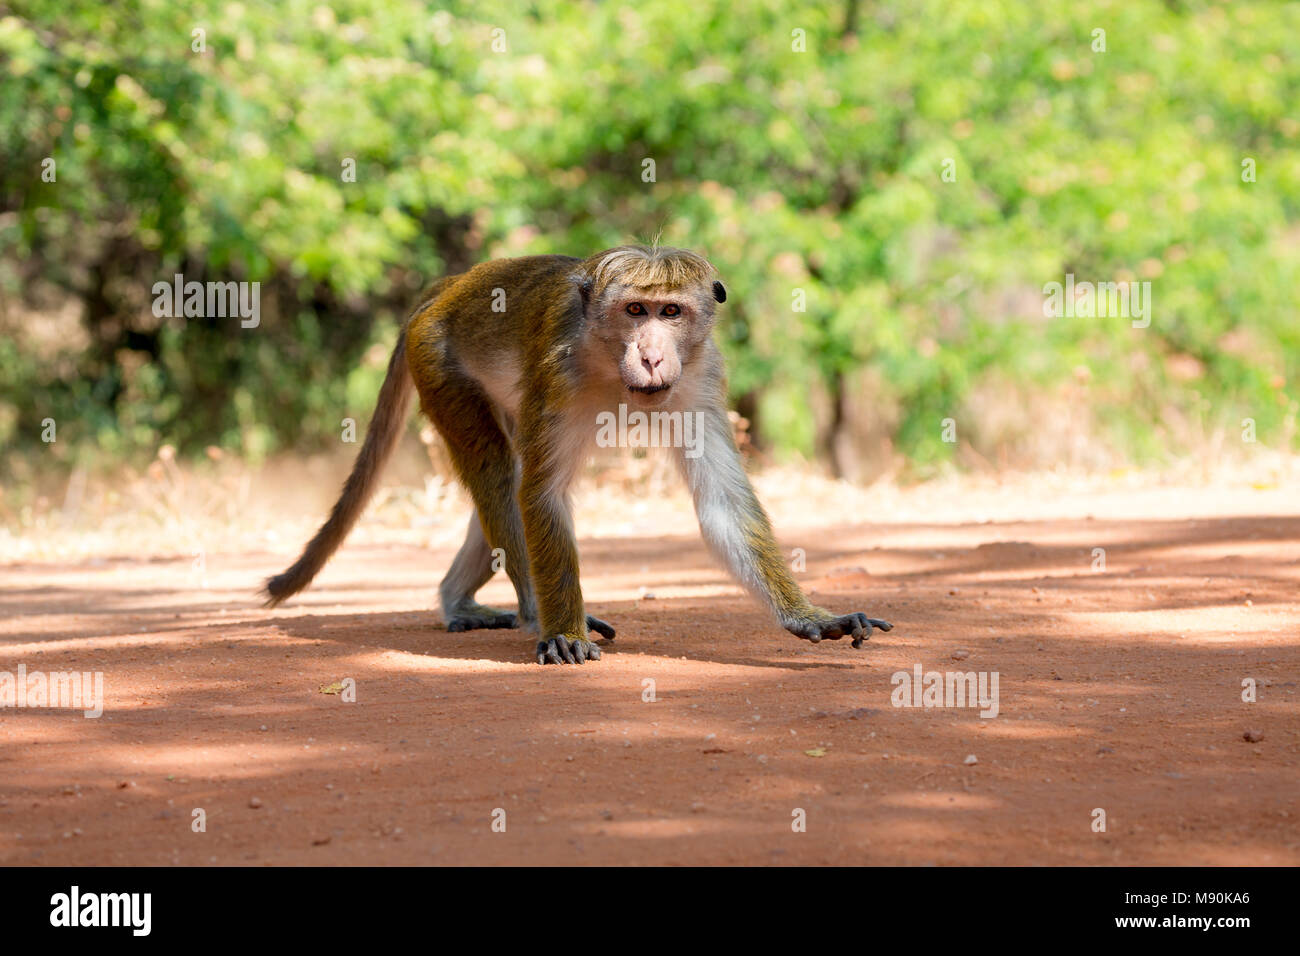 La toque macaque, Macaca sinica, è di colore rosso-marrone colorata di scimmia del Vecchio Mondo, endemica in Sri Lanka, dove è noto come il rilewa rilawa o. Questo Foto Stock